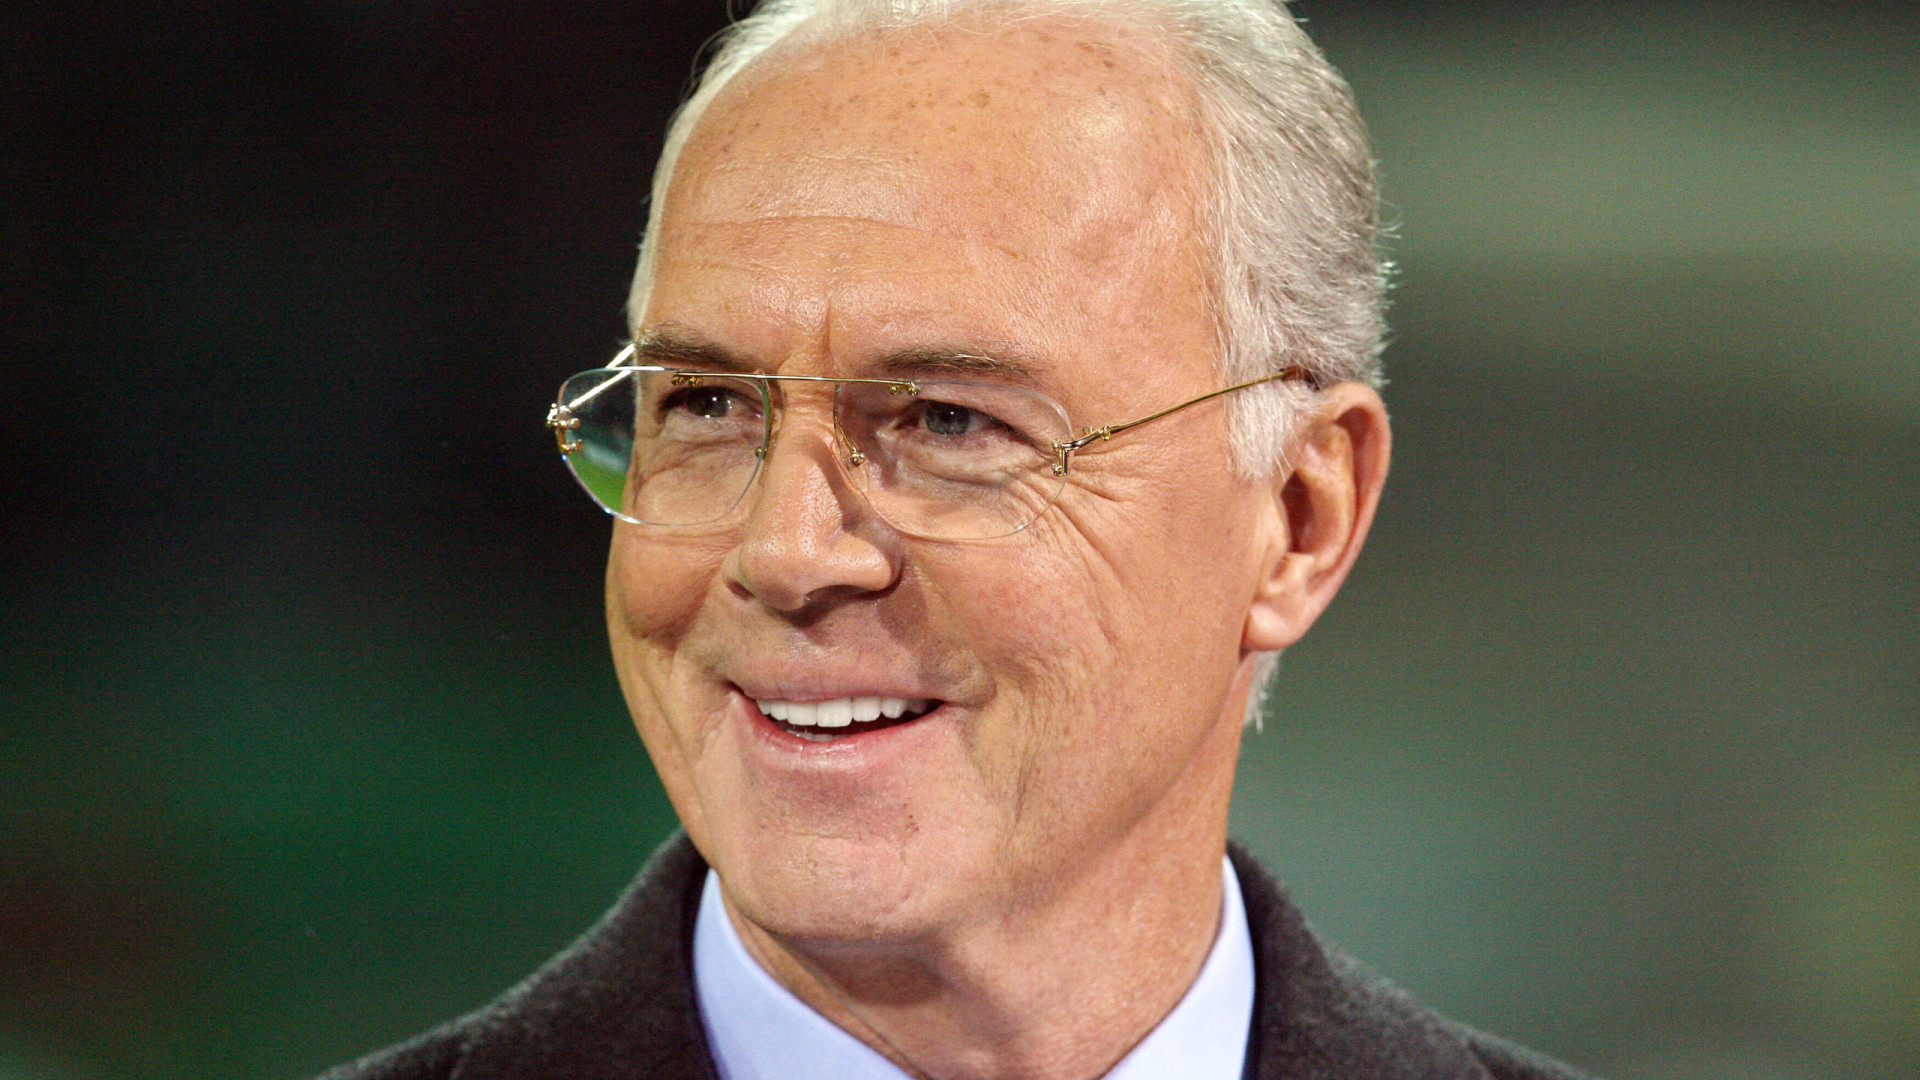 Morre Franz Beckenbauer, lenda do Bayern e campeão mundial 